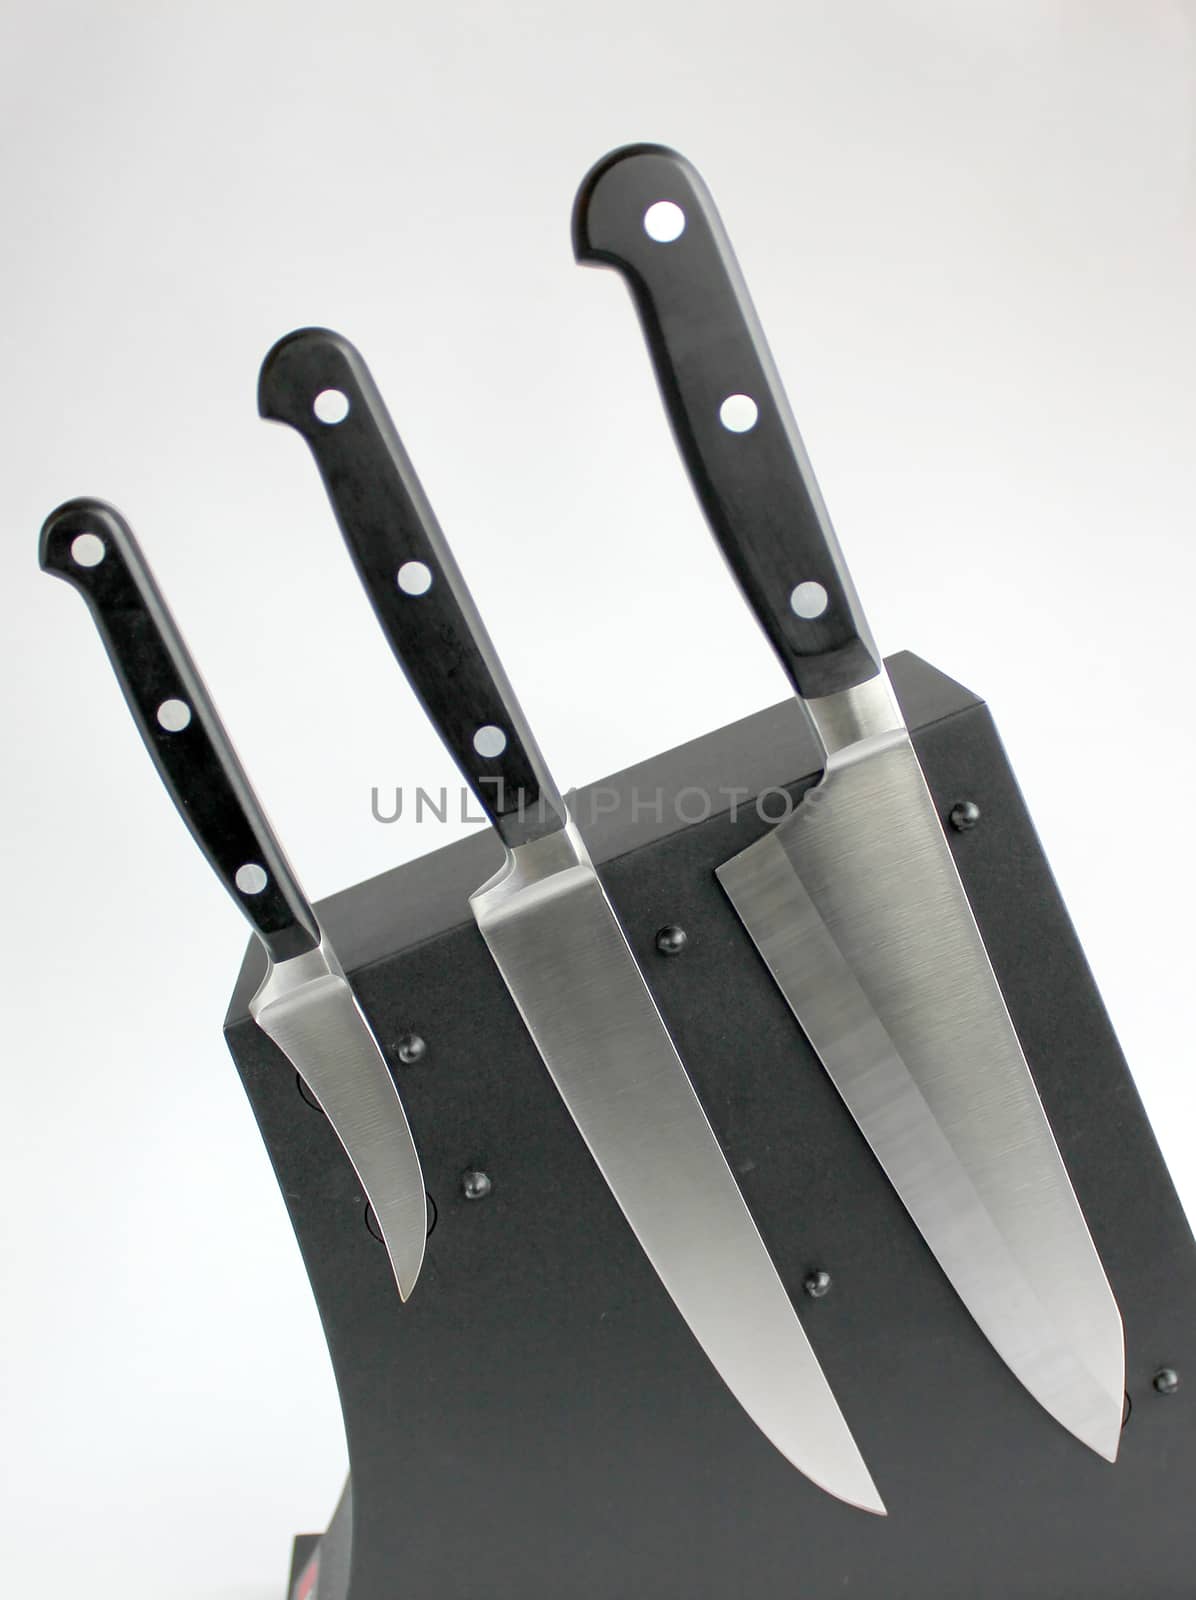 kitchen knifes by Vadimdem